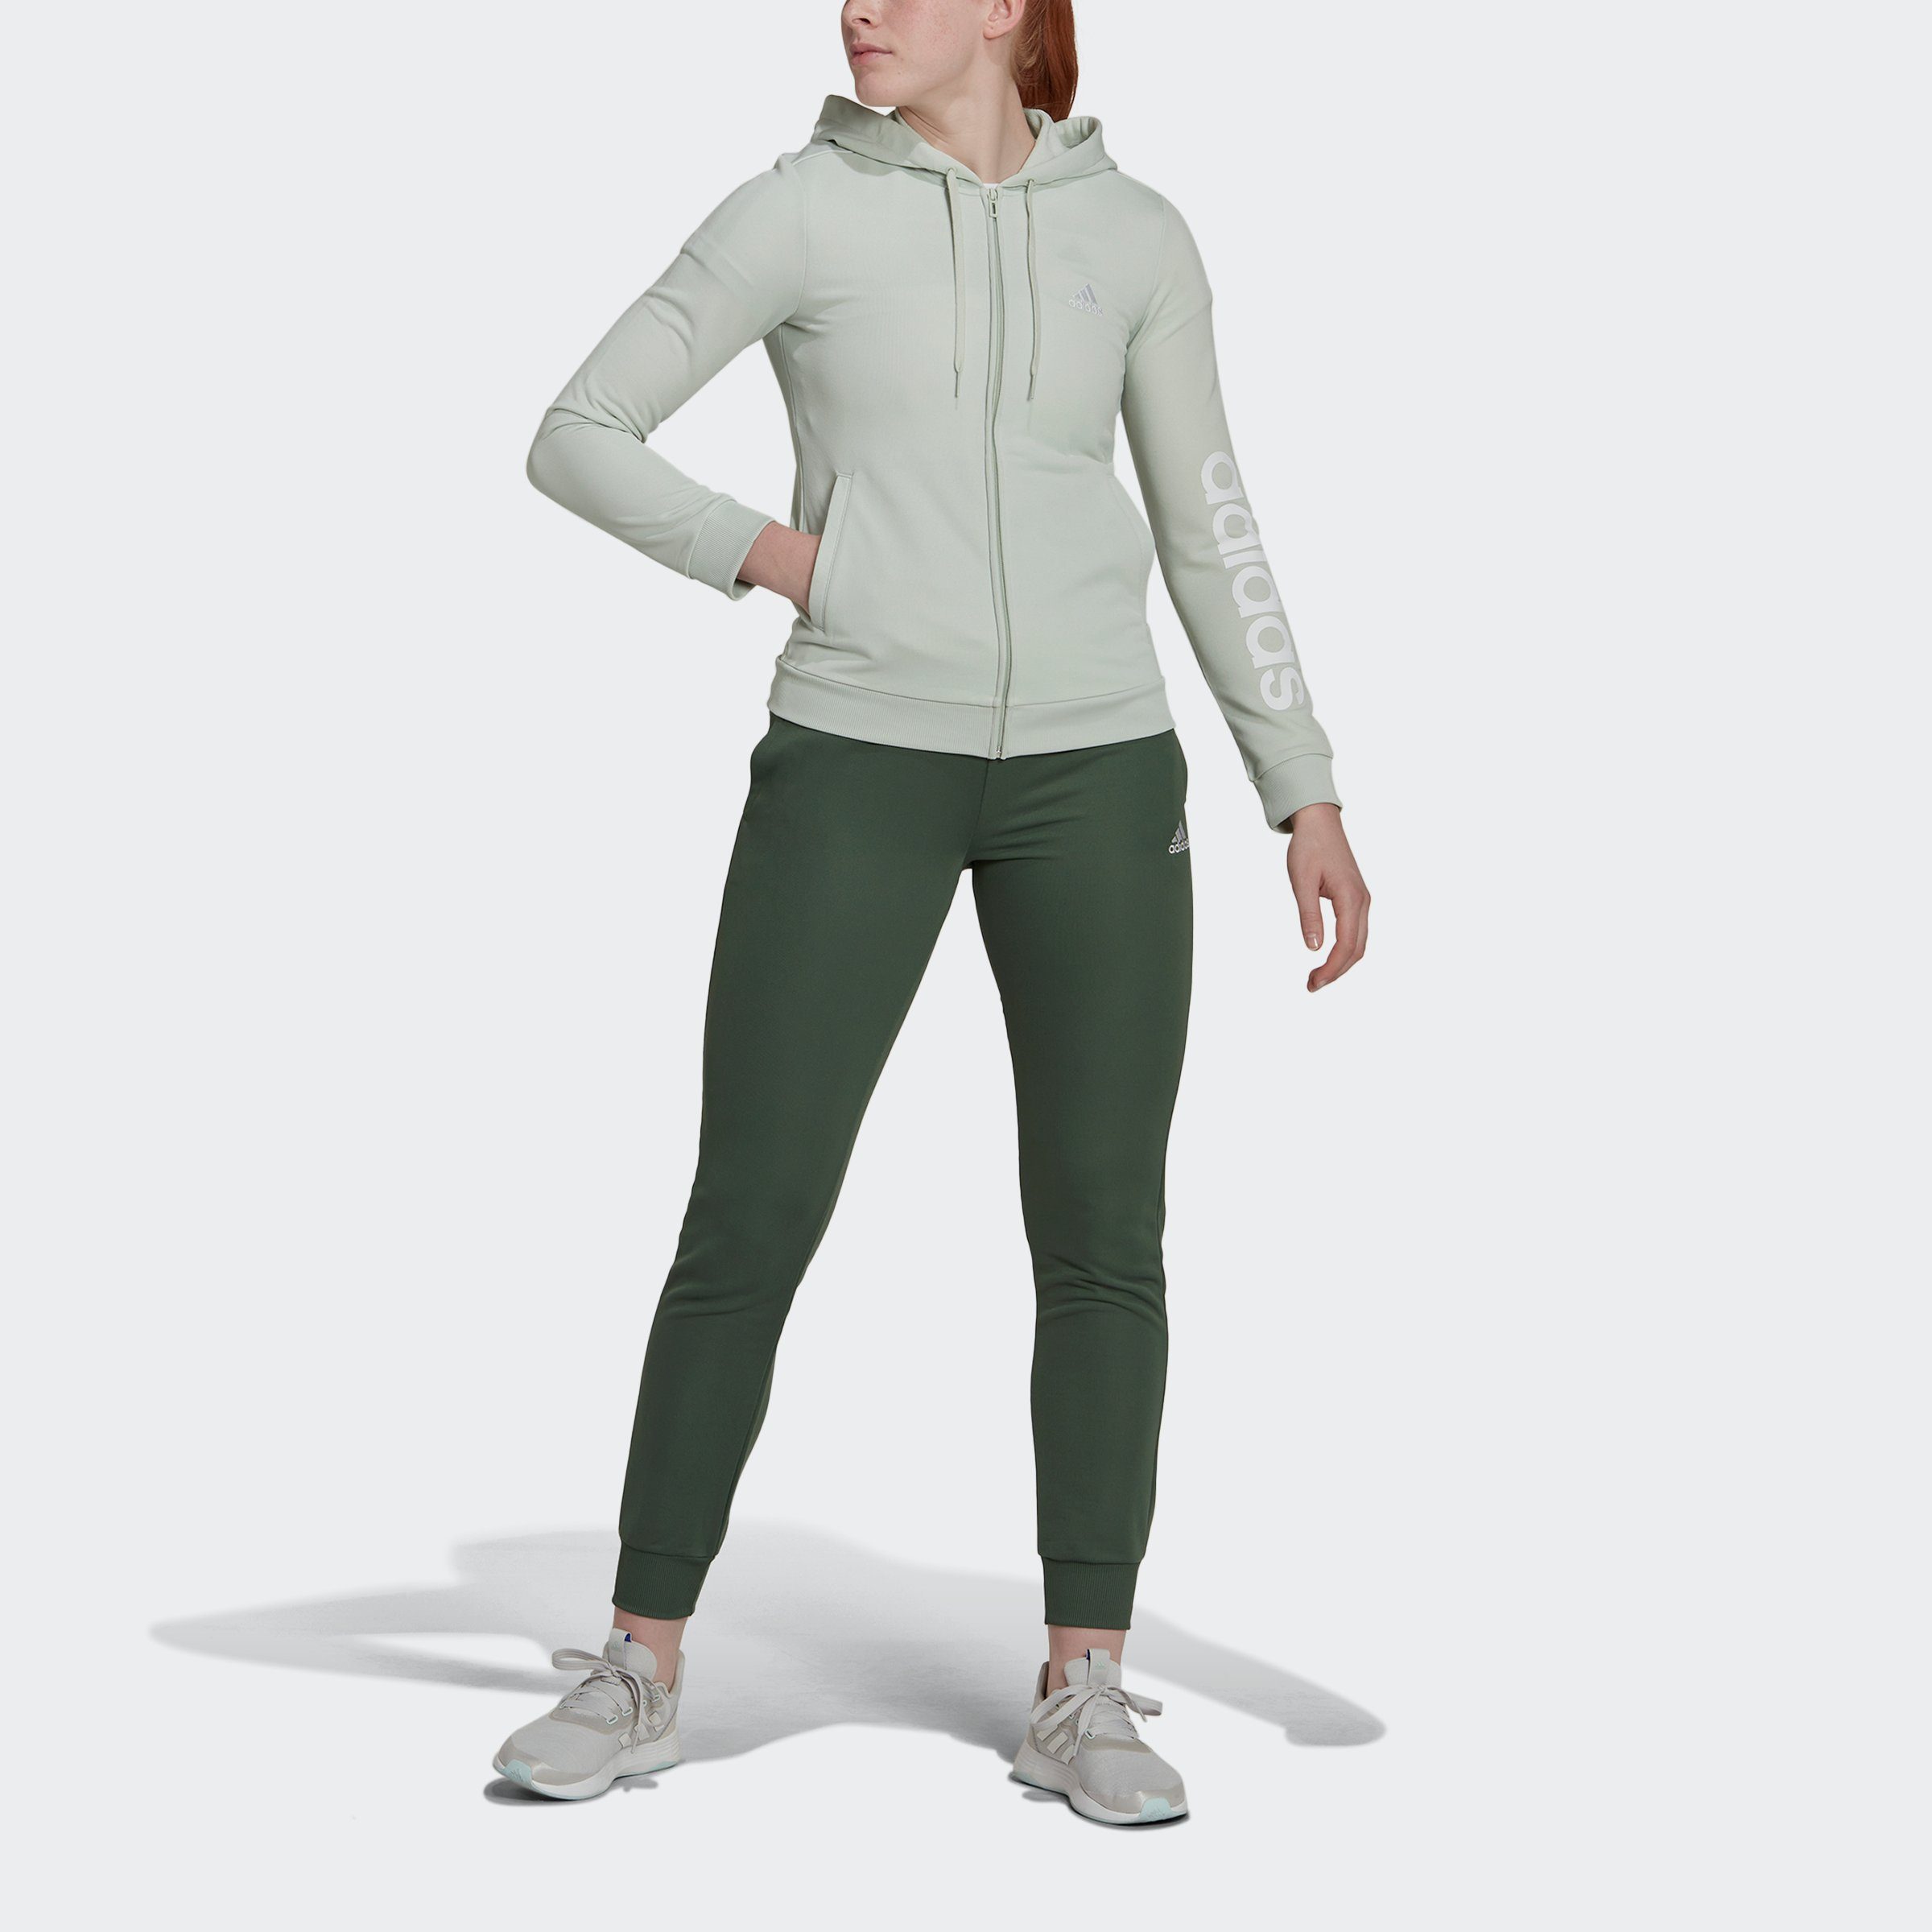 Grüne adidas Damen Trainingsanzüge online kaufen | OTTO